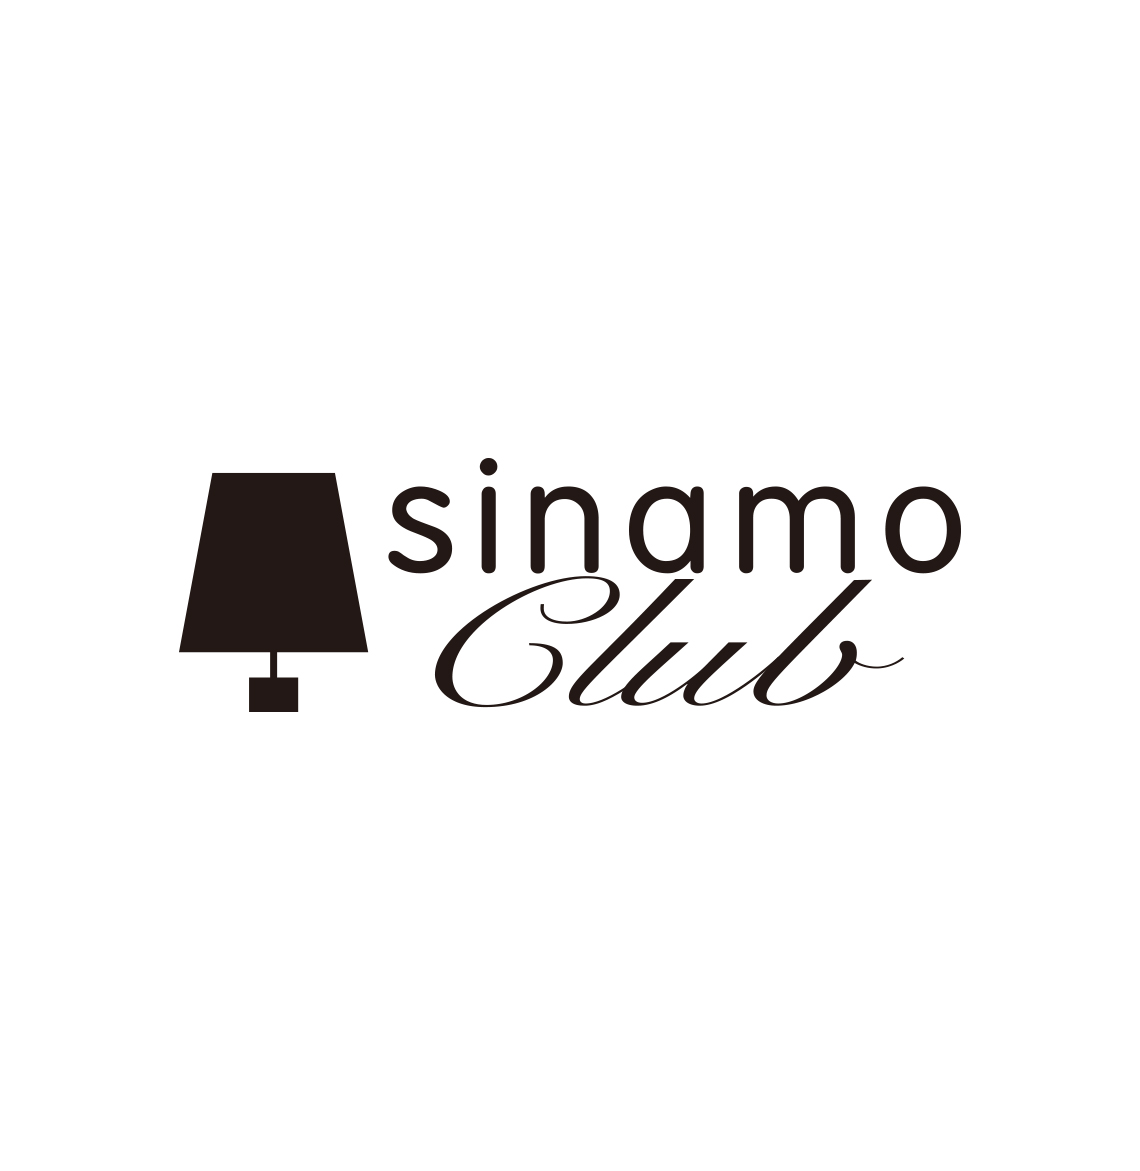 sinamo club logo